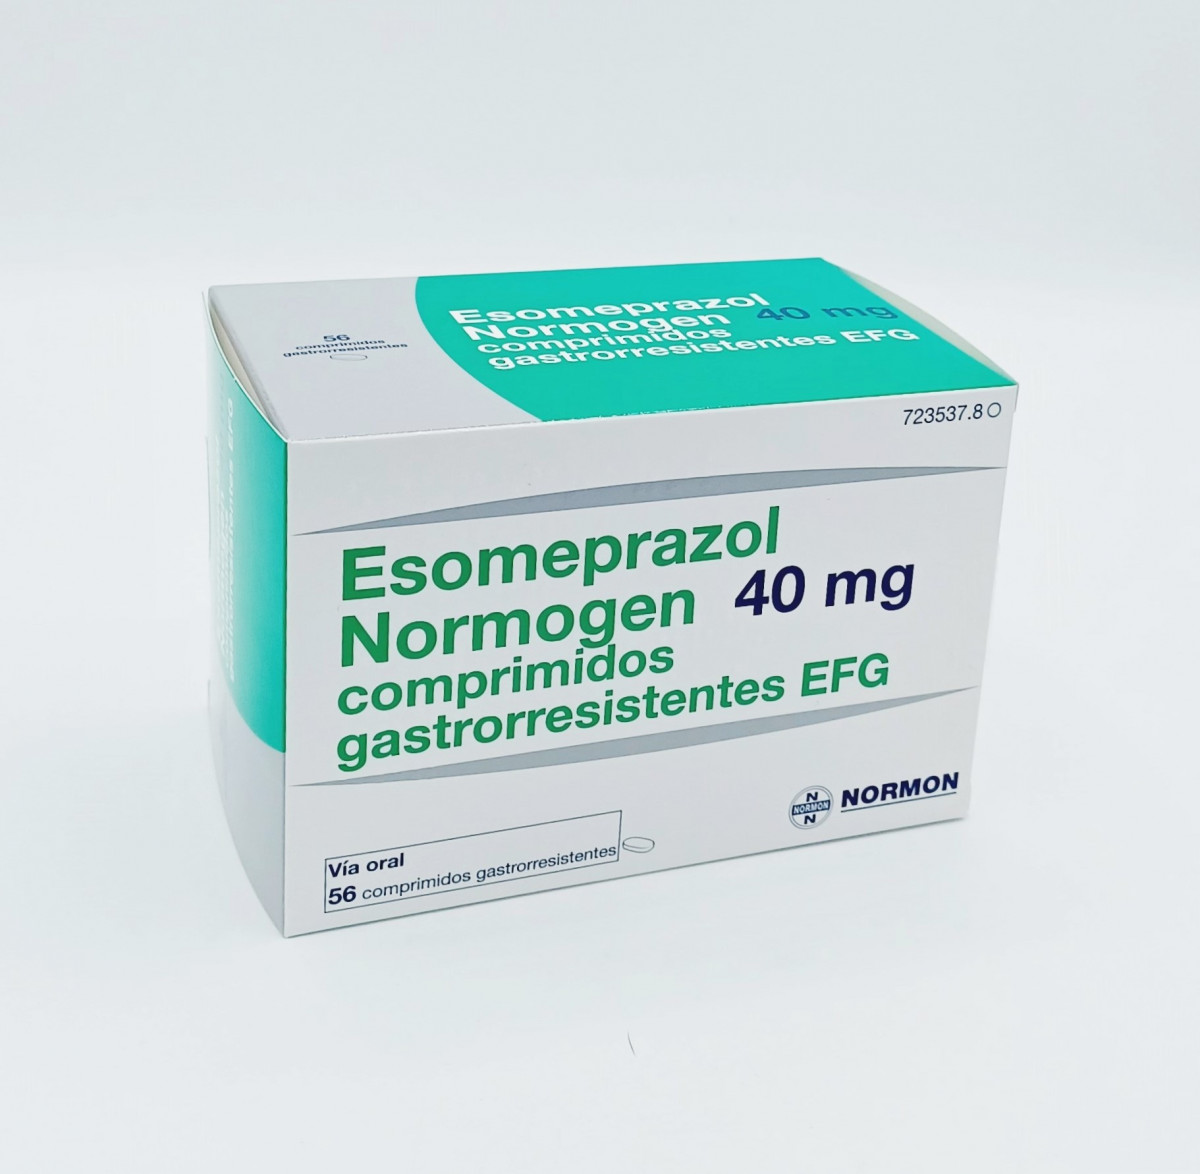 ESOMEPRAZOL NORMOGEN 40 MG COMPRIMIDOS GASTRORRESISTENTES EFG 28 comprimidos (Blister OPA/Al/PE-Al/PE) fotografía del envase.